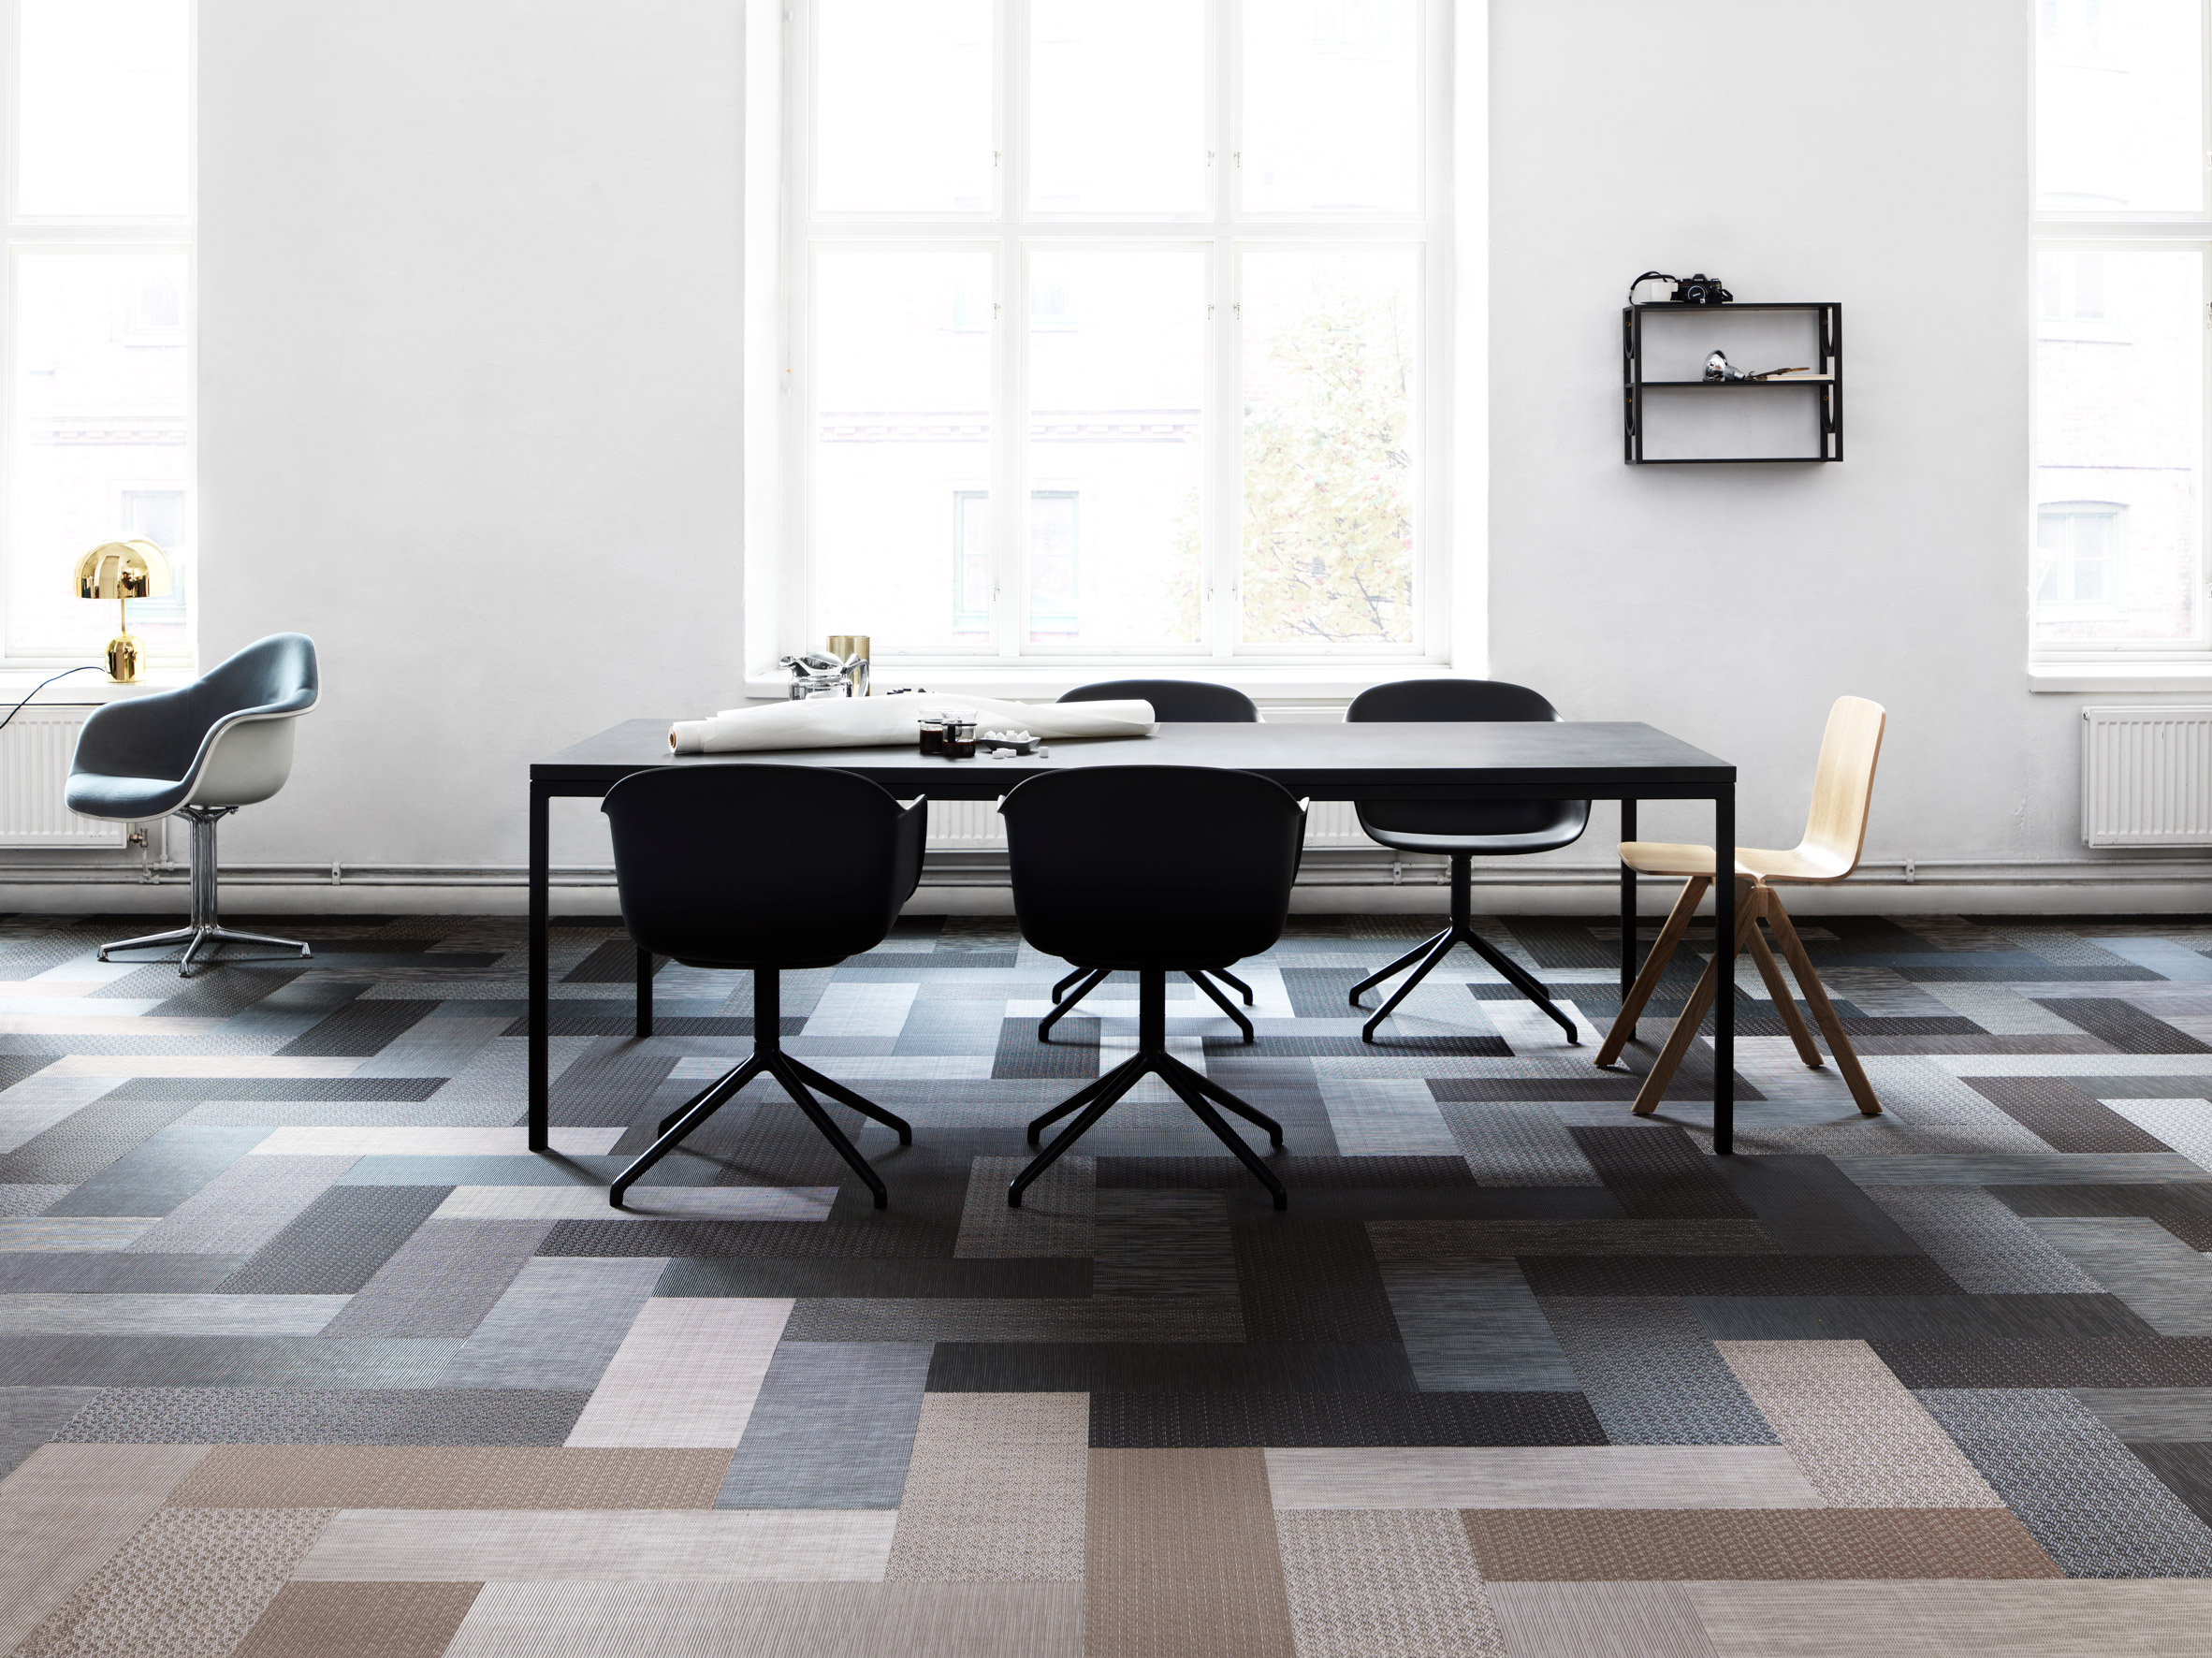 Silence range of woven vinyl flooring by Bolon